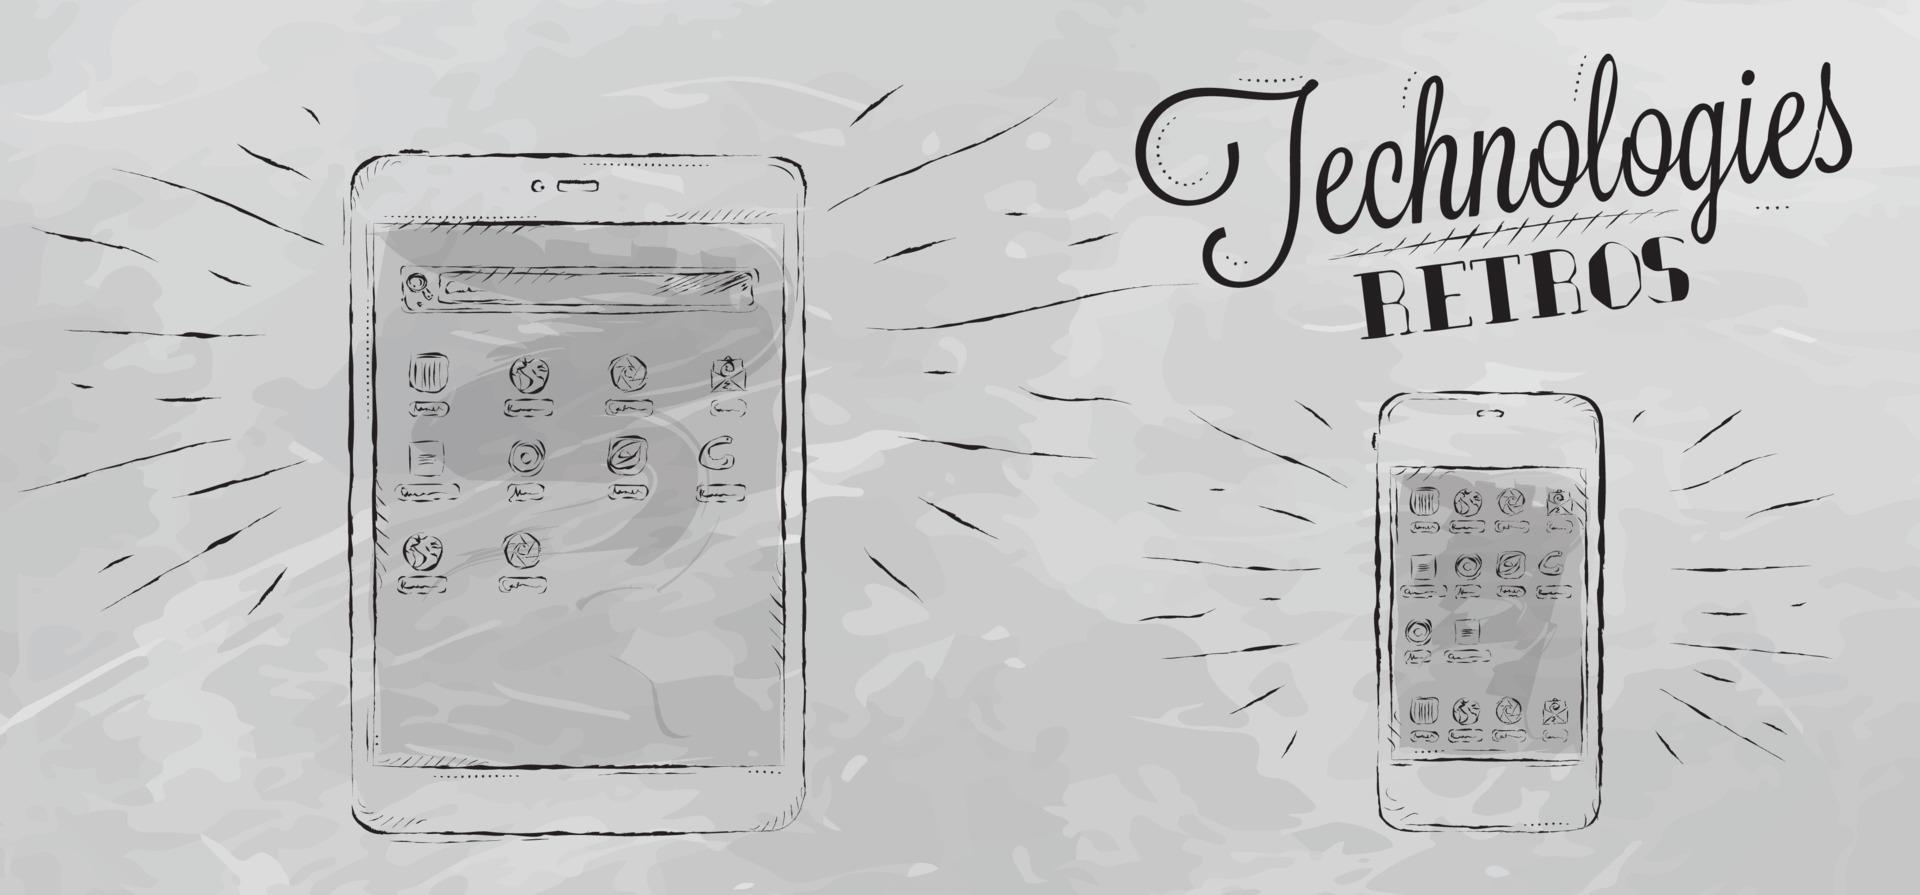 icone sul dispositivo tablet mobile con tecnologia moderna in stile vintage stilizzato sotto i disegni in gesso grigio vettore